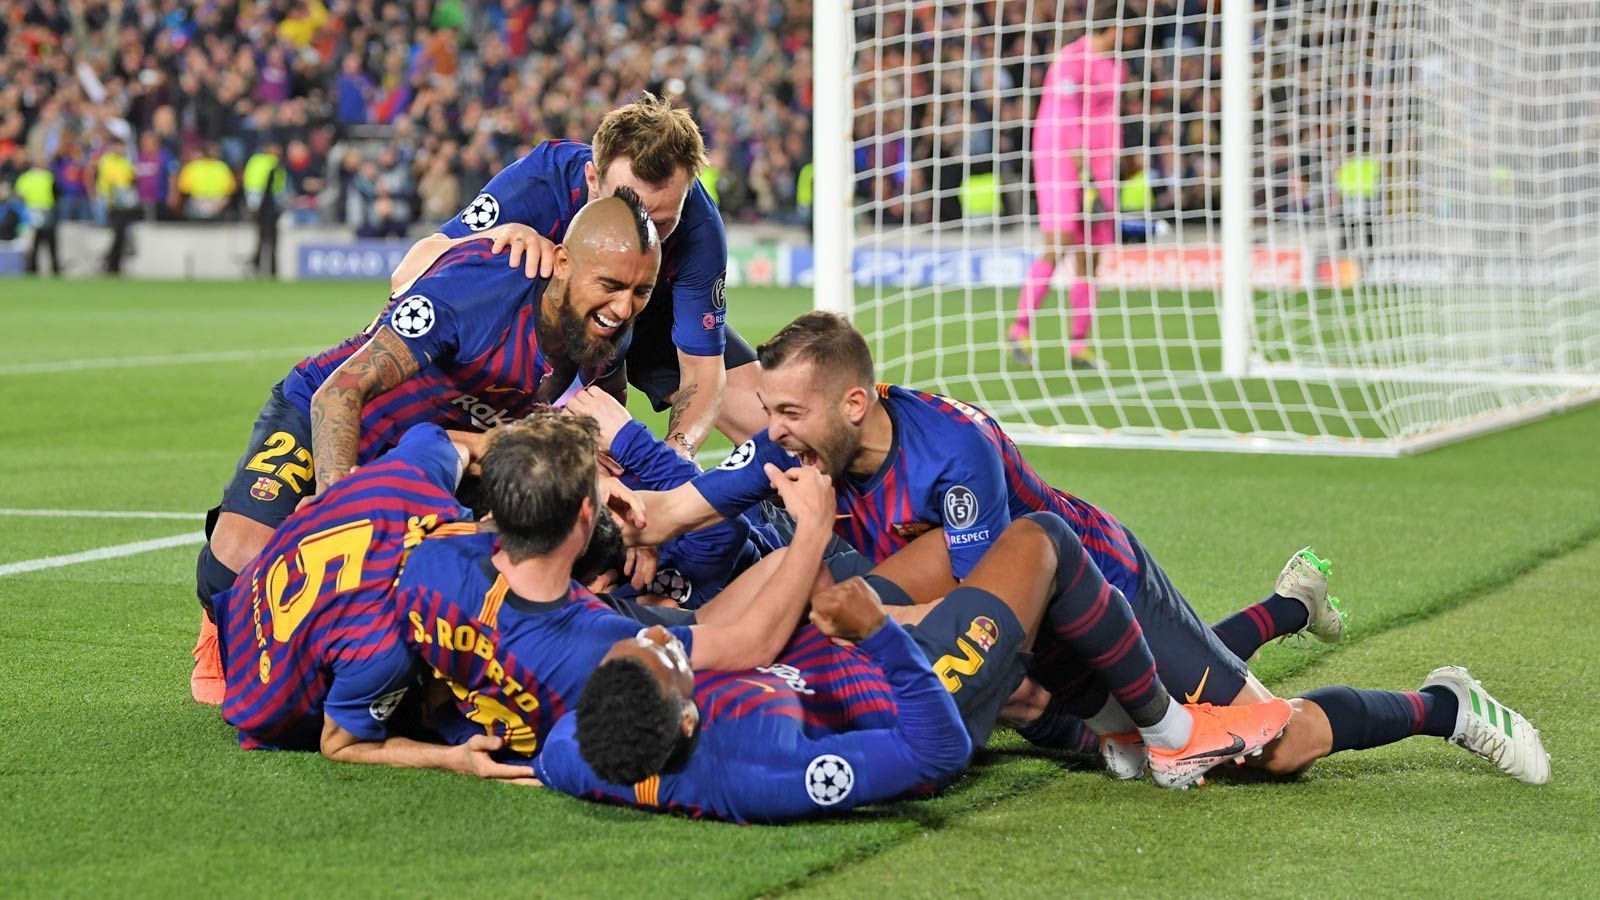 
                <strong>Barcelona steht mit mehr als einem Bein im Finale</strong><br>
                Die Freude auf Seiten der Katalanen ist beinahe grenzenlos. Der FC Barcelona feiert seinen Superstar Lionel Messi. Denn dank ihm stehen die Spanier schon vor dem Rückspiel mit mehr als nur einem Bein im Finale der Champions League.
              